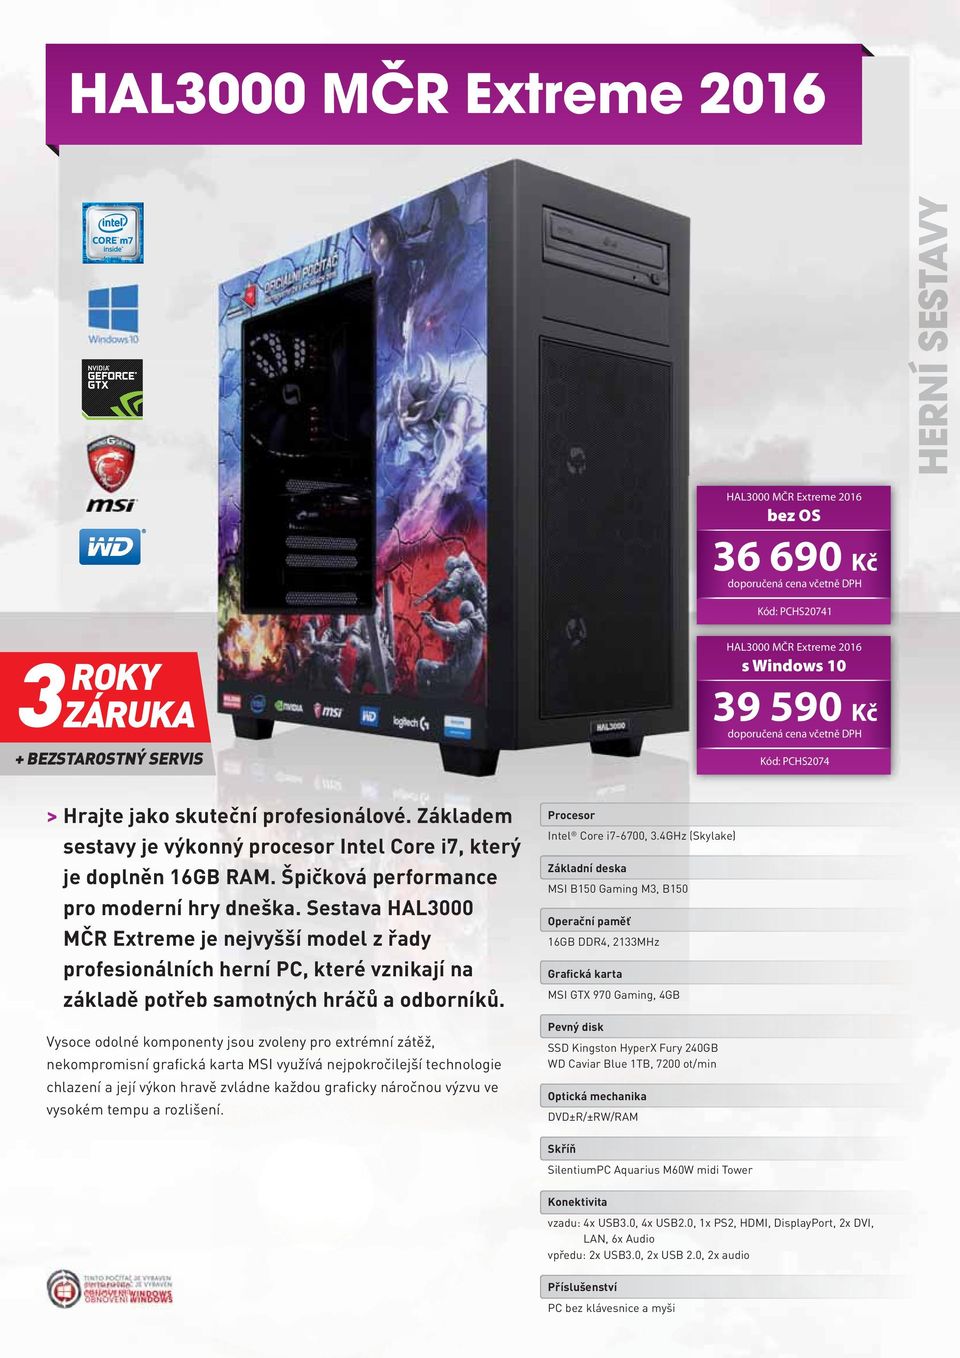 Sestava HAL000 MČR Extreme je nejvyšší model z řady profesionálních herní PC, které vznikají na základě potřeb samotných hráčů a odborníků.